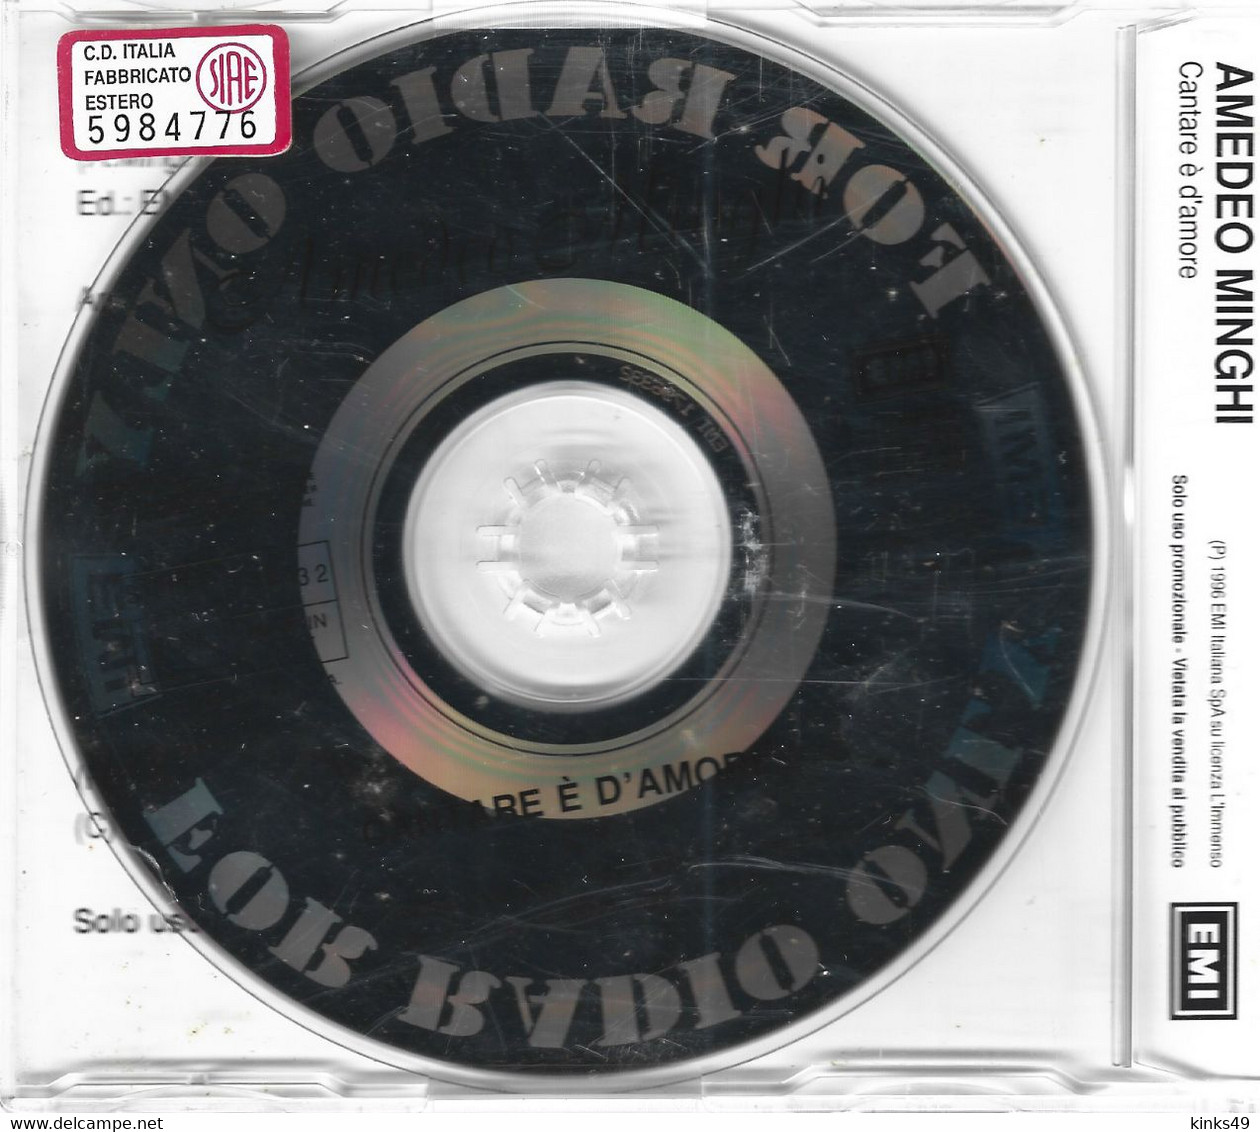 AMEDEO MINGHI : CD Singolo Promozionale < Cantare è D'amore > 1996 / EMI - Andere - Italiaans